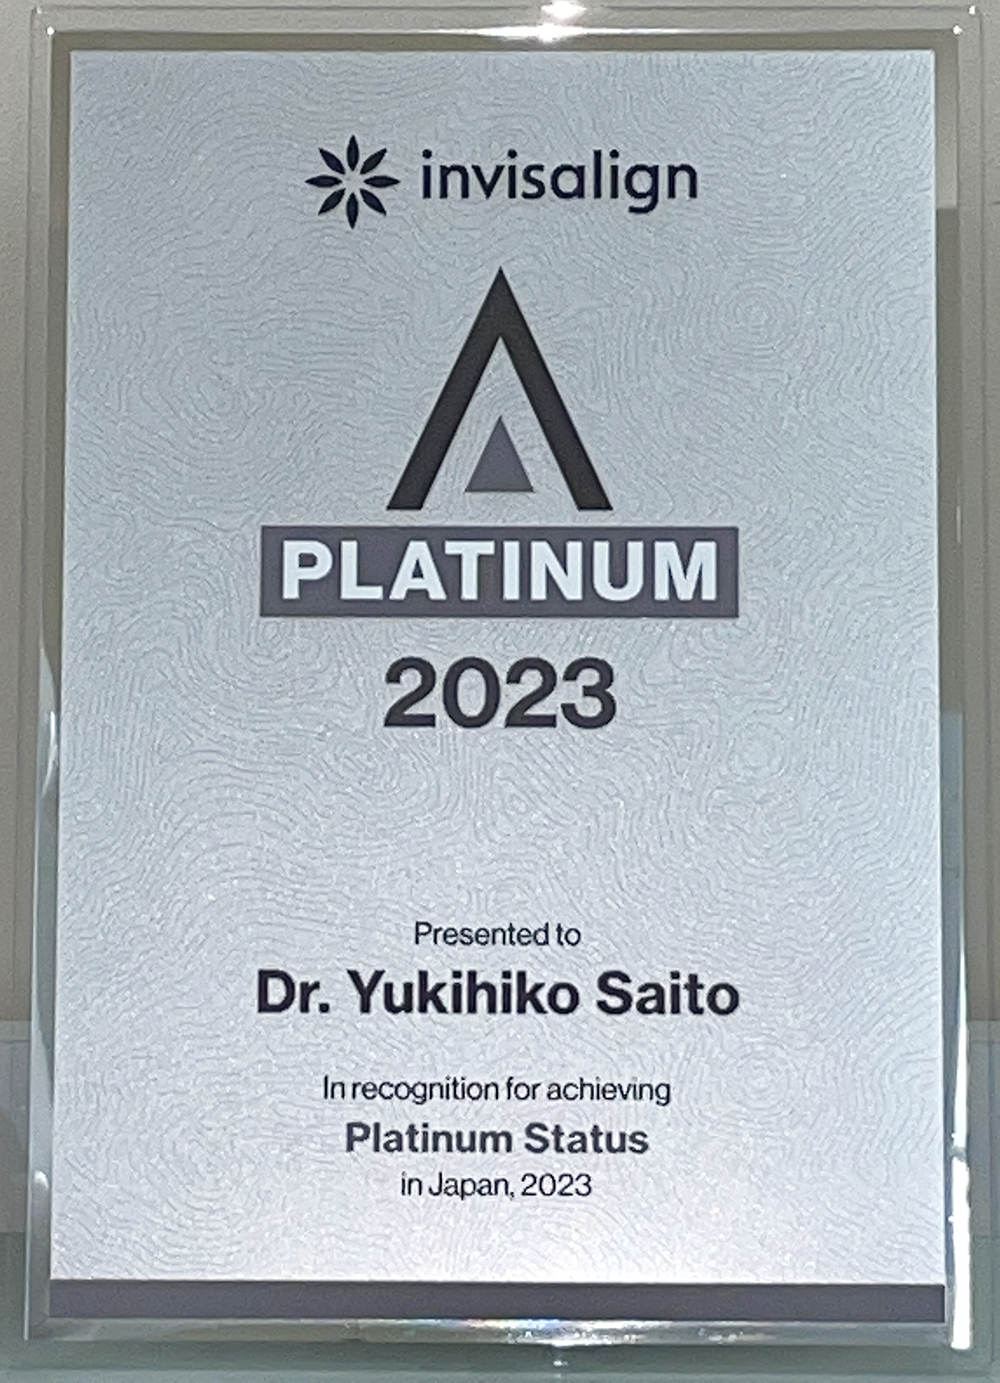 invisalign platinum 2023